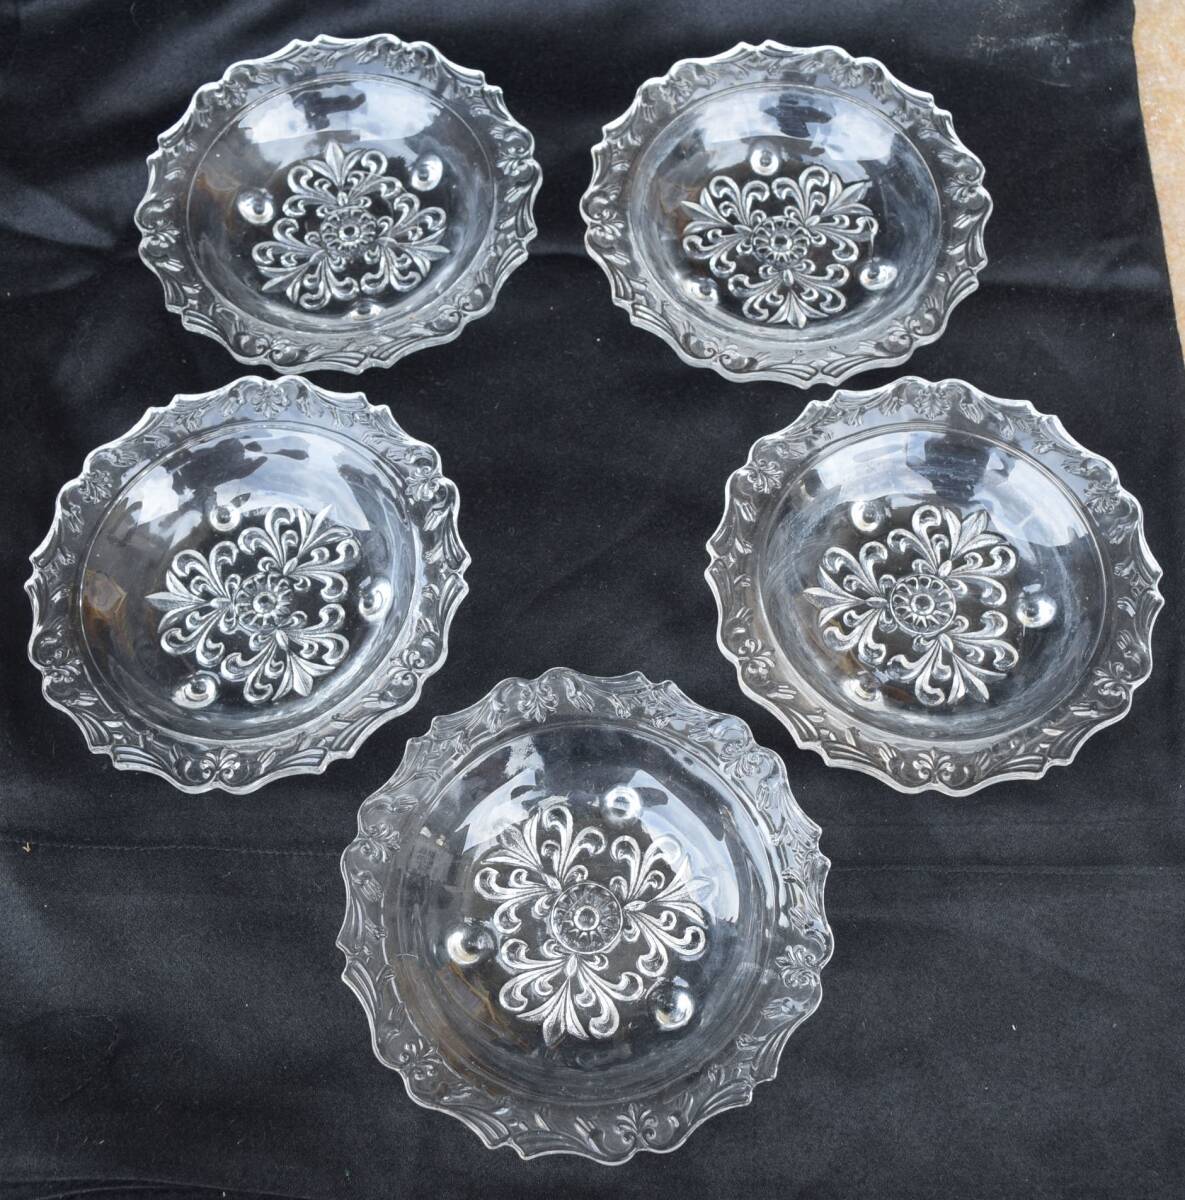 ■昭和レトロなガラス皿5枚セット■直径約15ｃｍ■デザート皿小鉢当時もの フルーツ皿かき氷皿アイスクリーム皿シャーベット皿の画像1